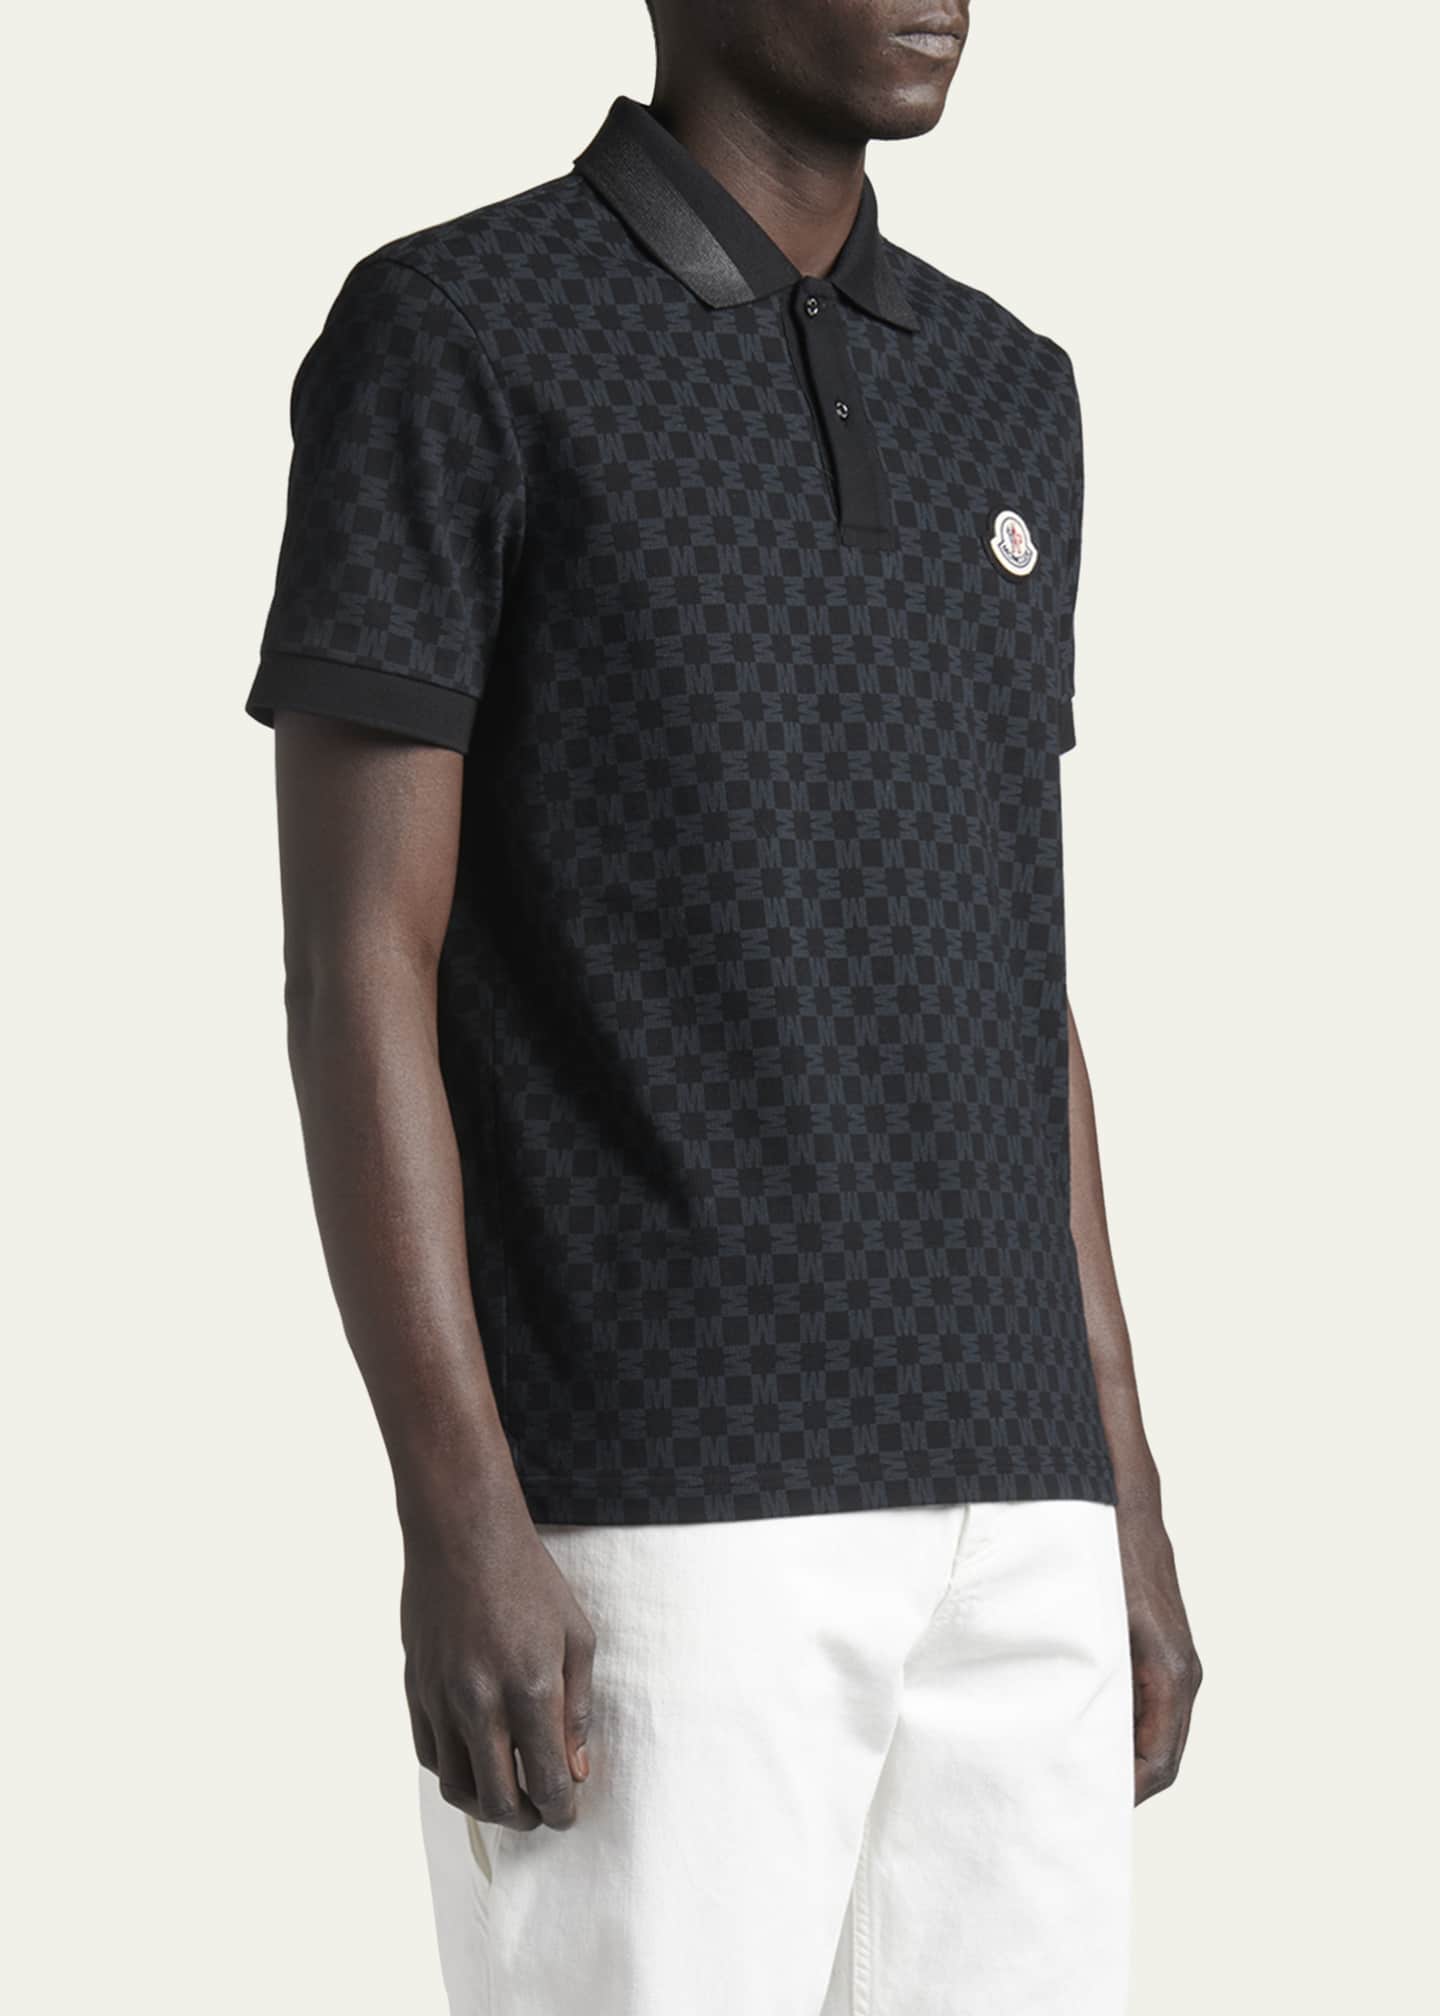 Moncler Men's Pique Monogram Checkered Polo Shirt